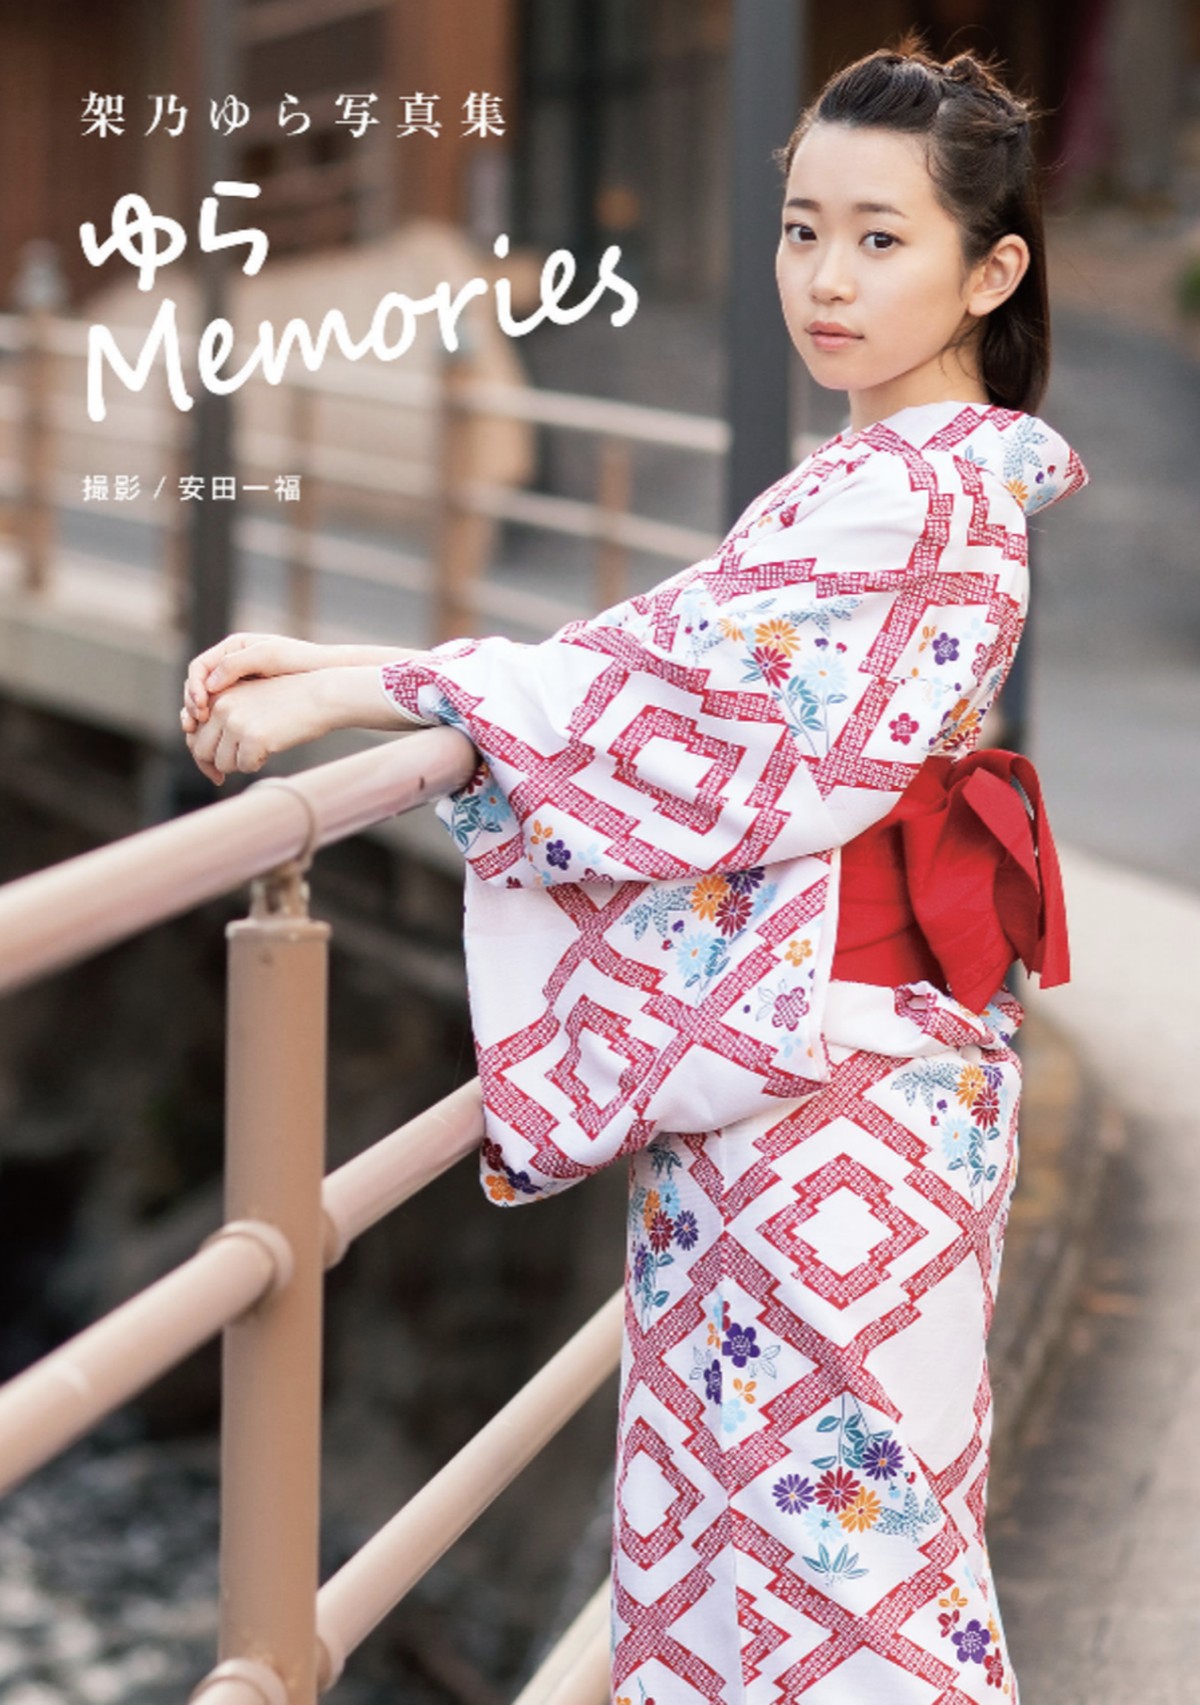 Photobook Yura Kano 架乃ゆら Yura Memories 0001 2847379913.jpg